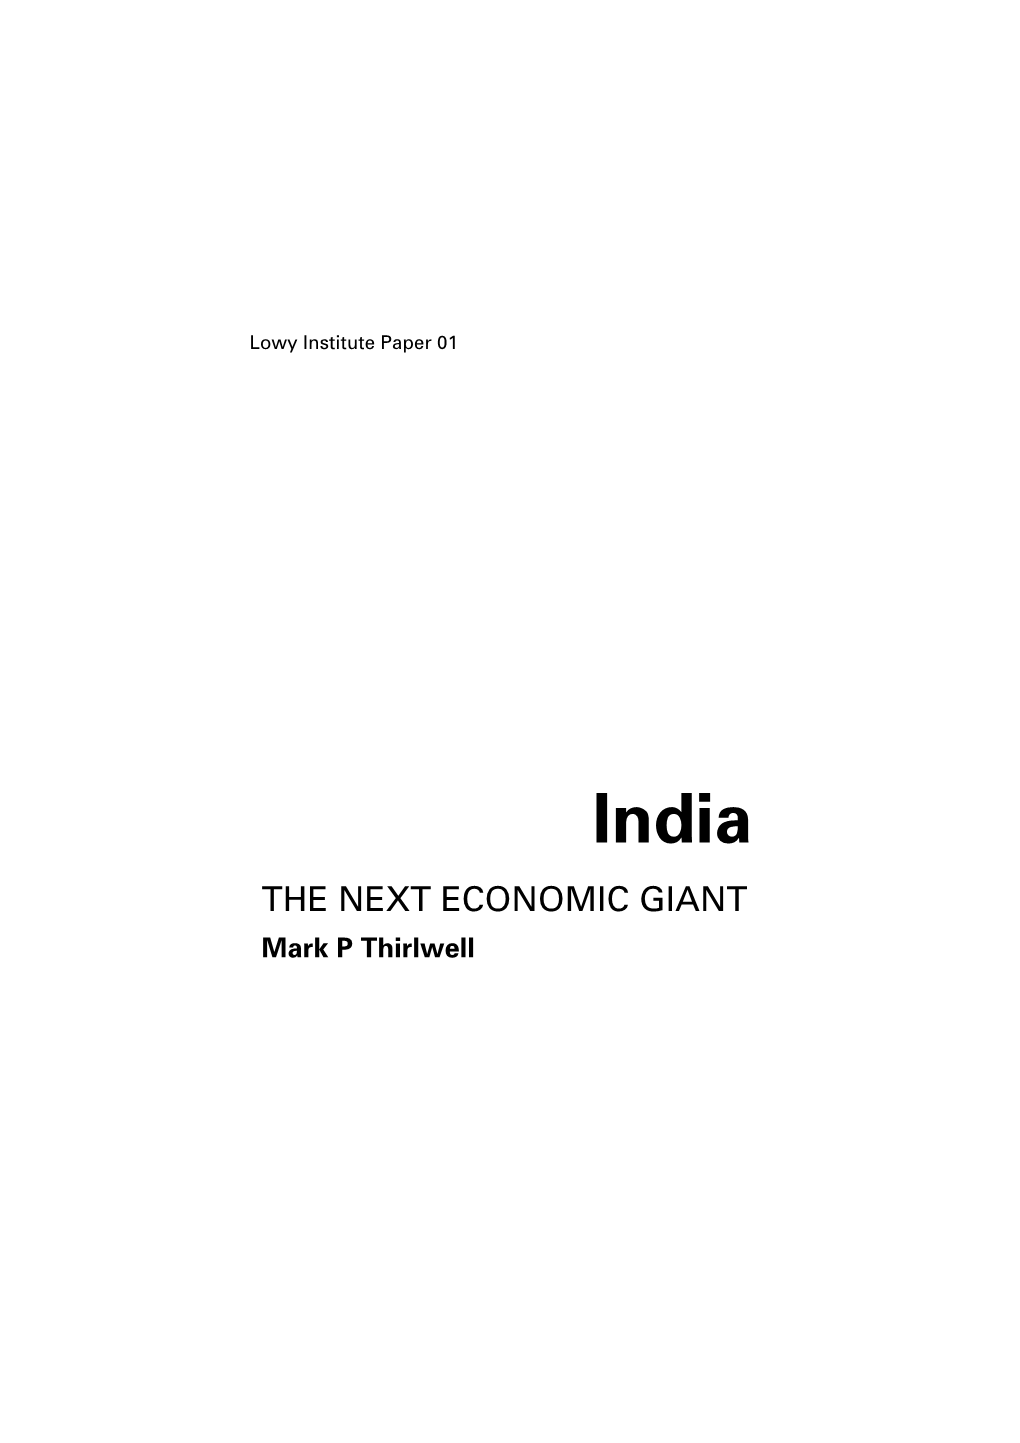 India: the Next Economic Giant